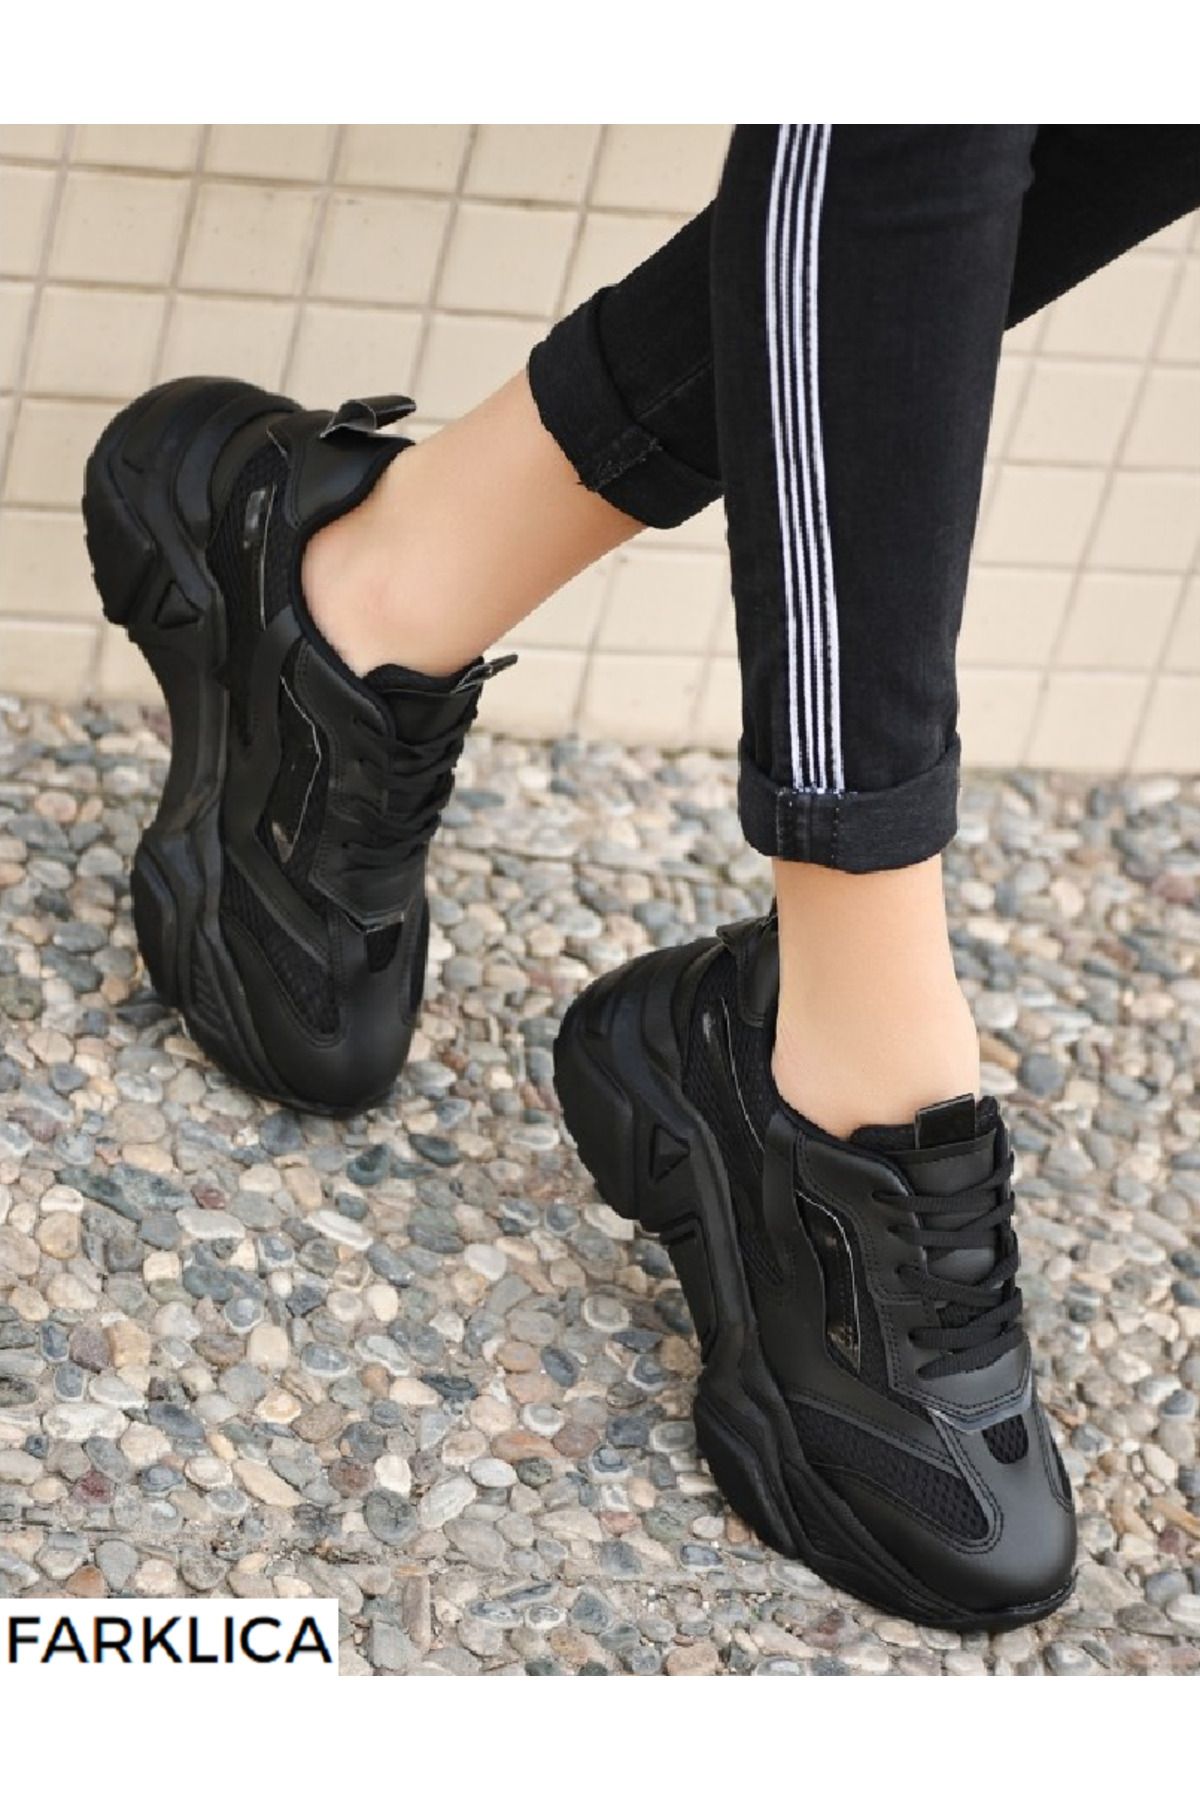 Farklıca Şık Tasarım Dicana Siyah Cilt Bağcıklı Spor Ayakkabı Frk-246862